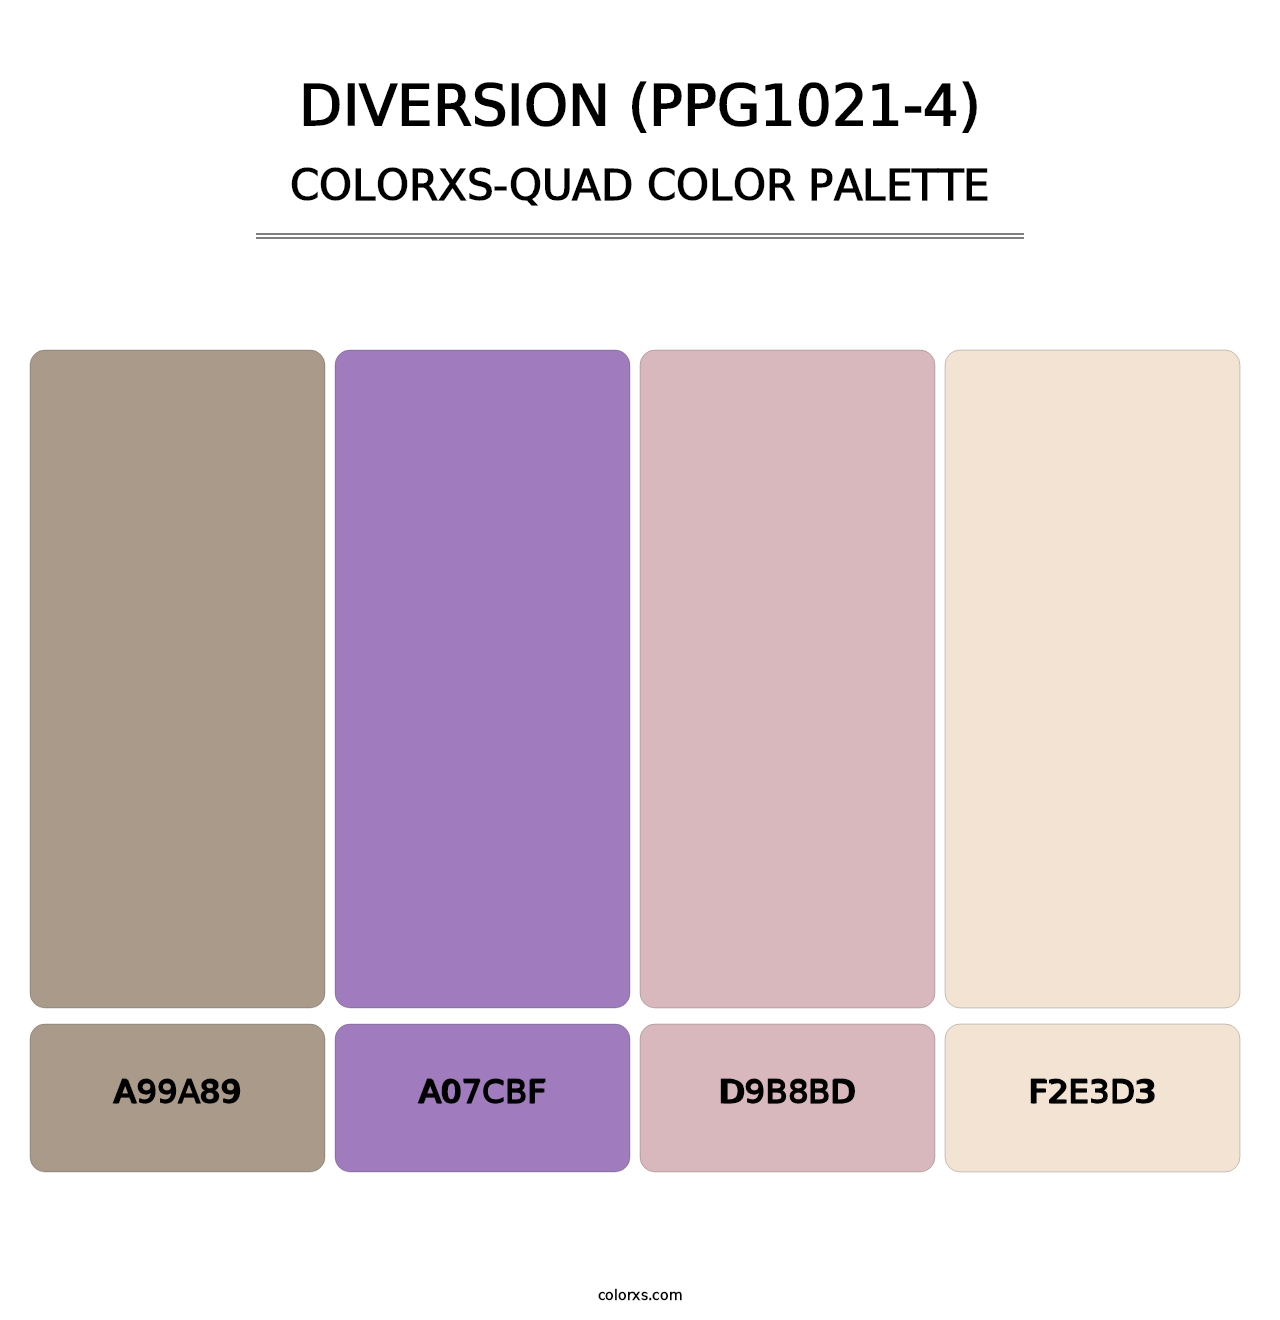 Diversion (PPG1021-4) - Colorxs Quad Palette